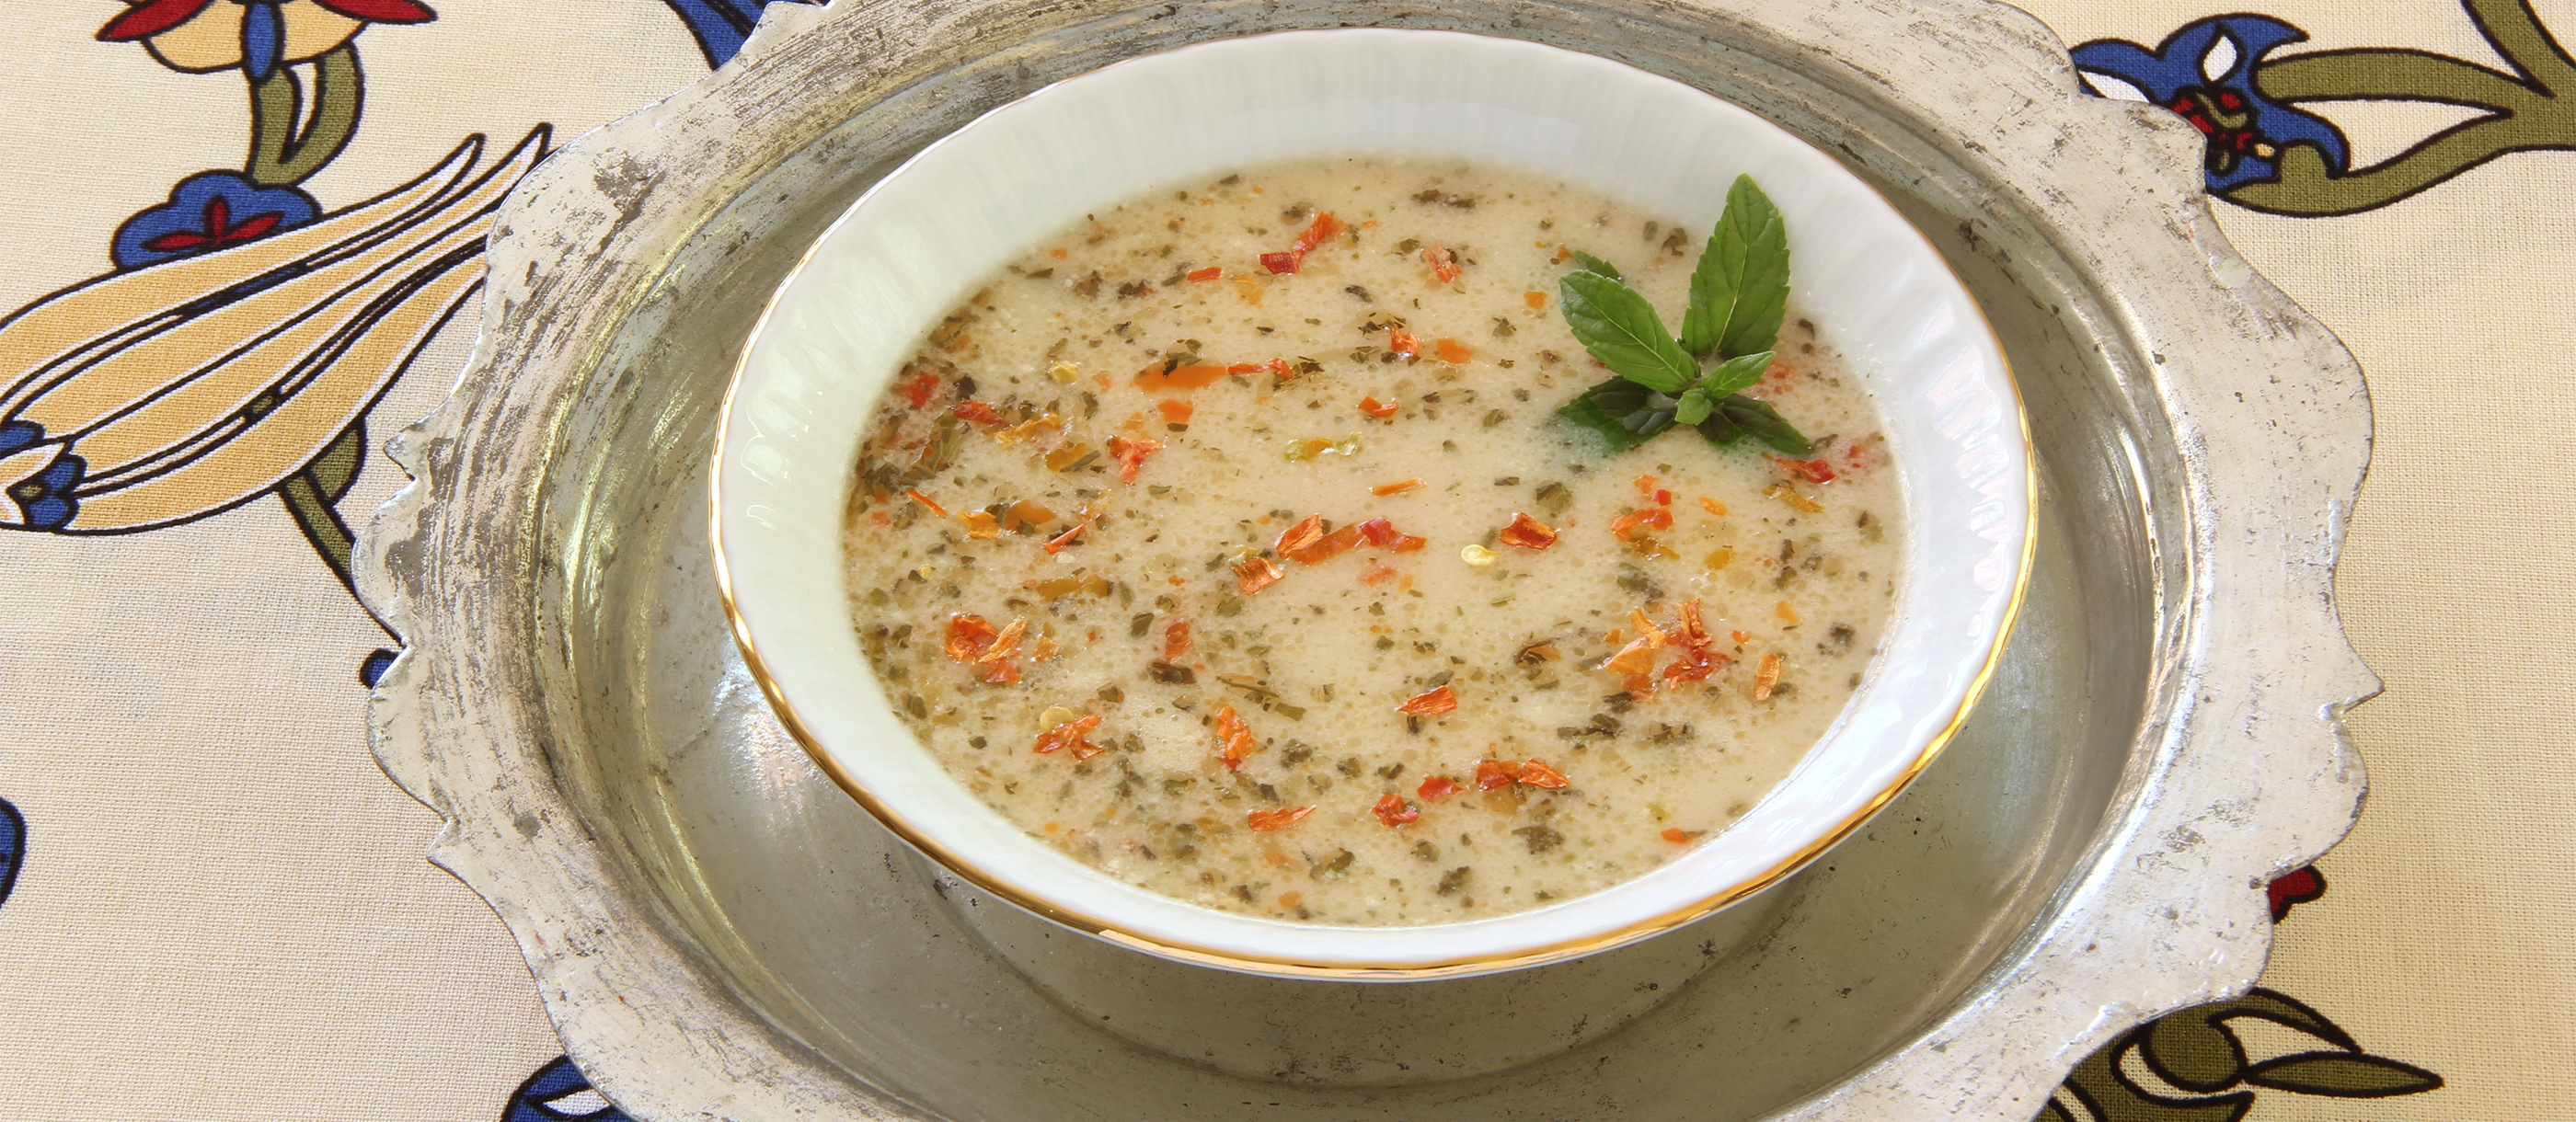 Tarhana Çorbası | Traditional Soup From Turkiye